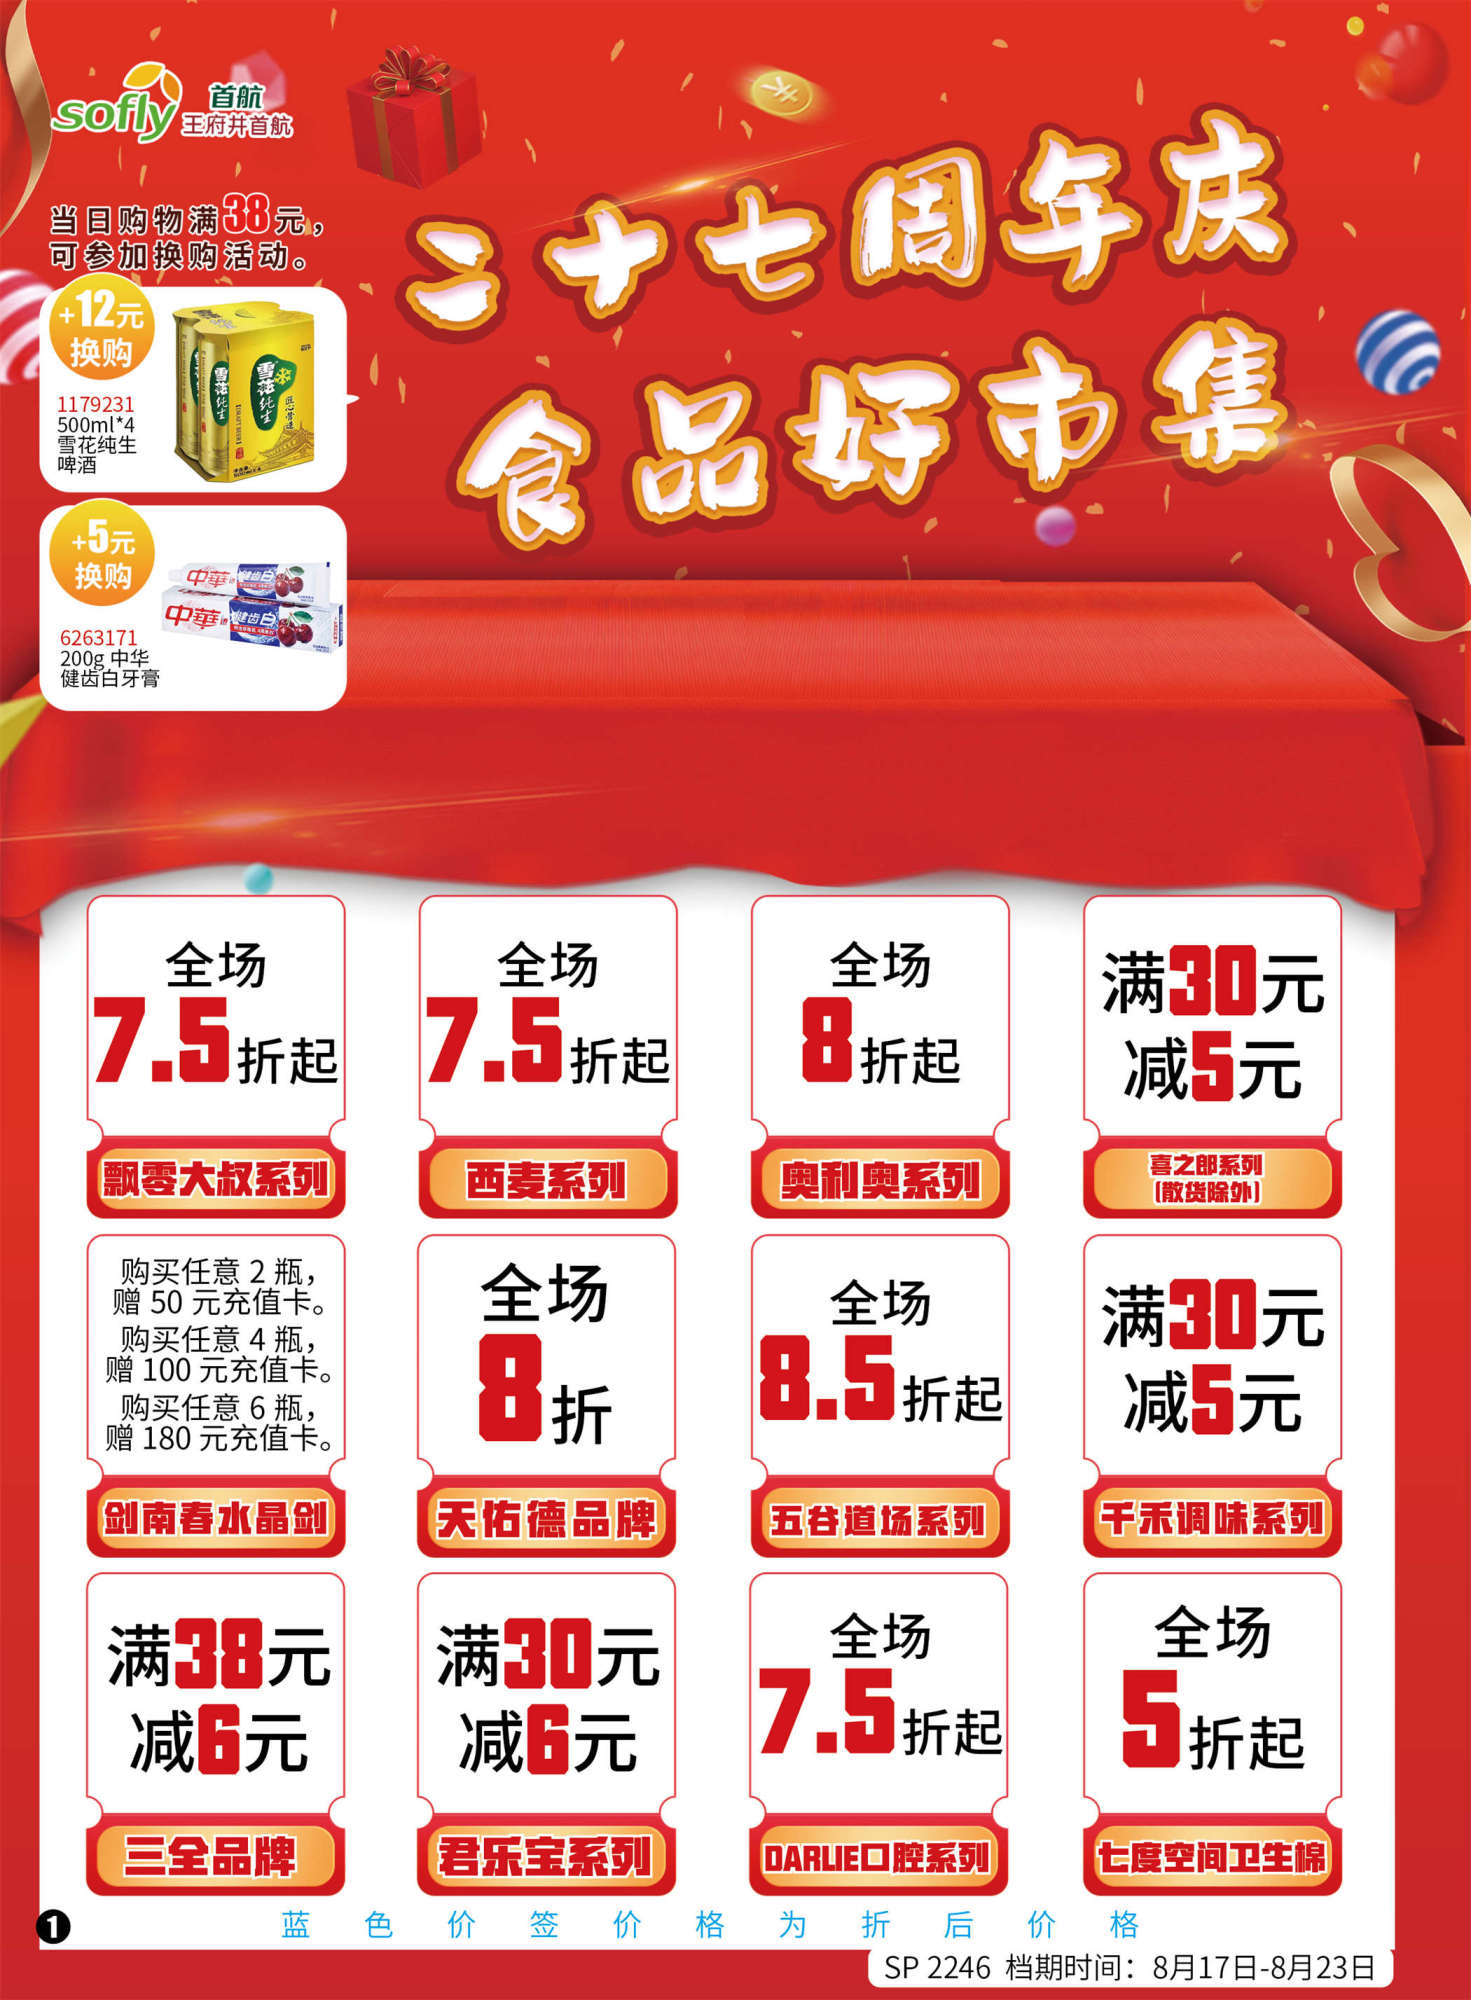 北京首航超市促销海报（第2246期）